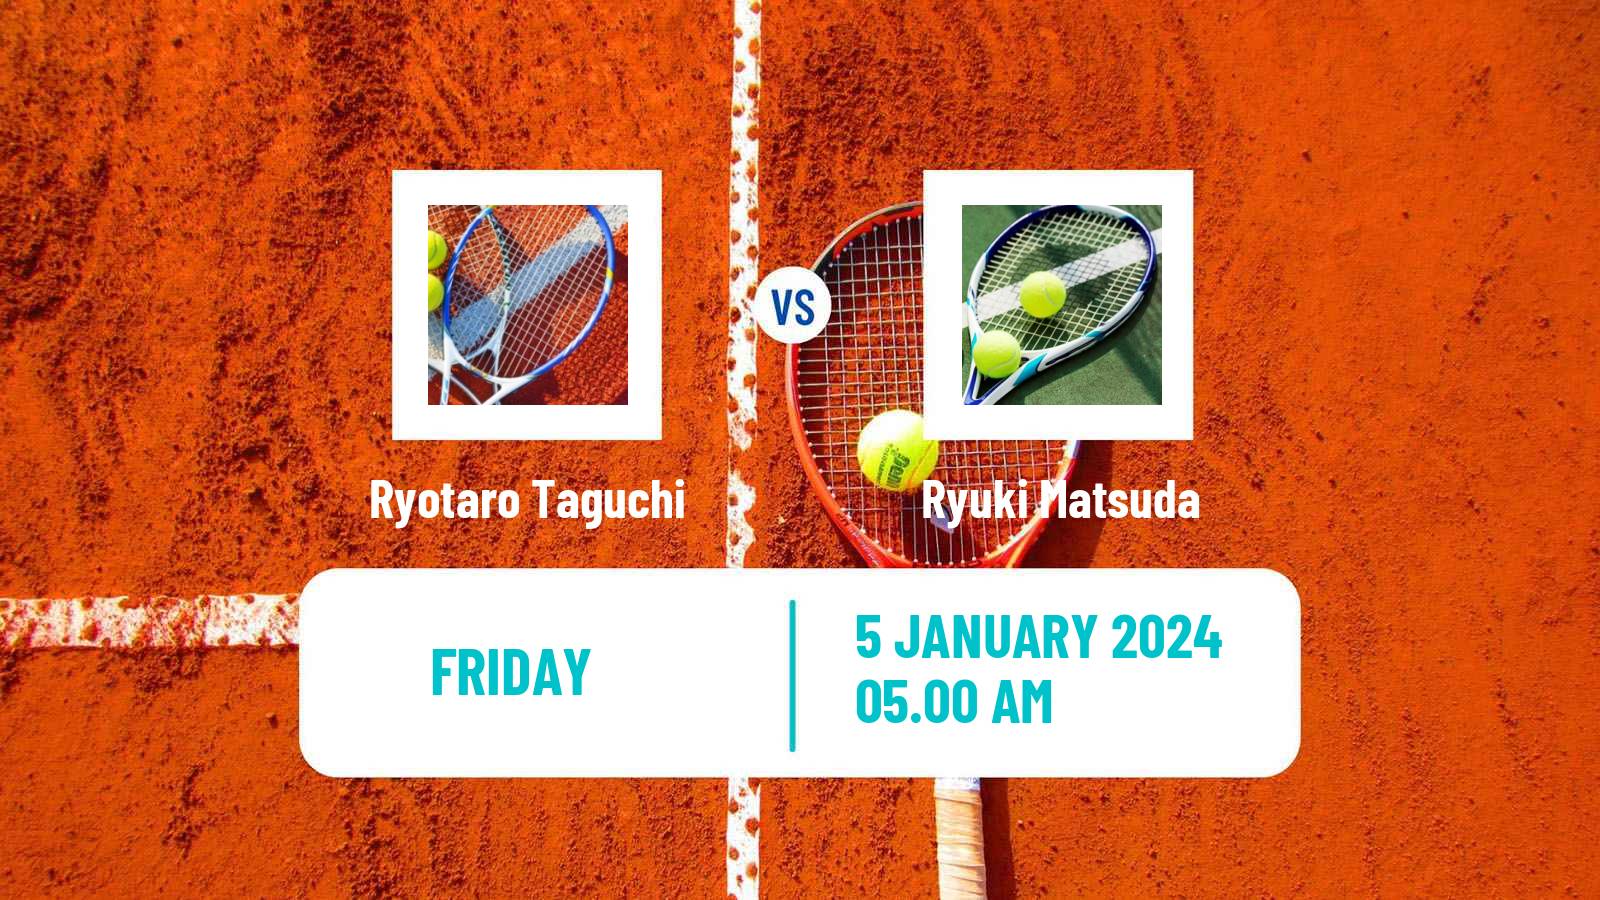 Tennis ITF M15 Monastir Men Ryotaro Taguchi - Ryuki Matsuda